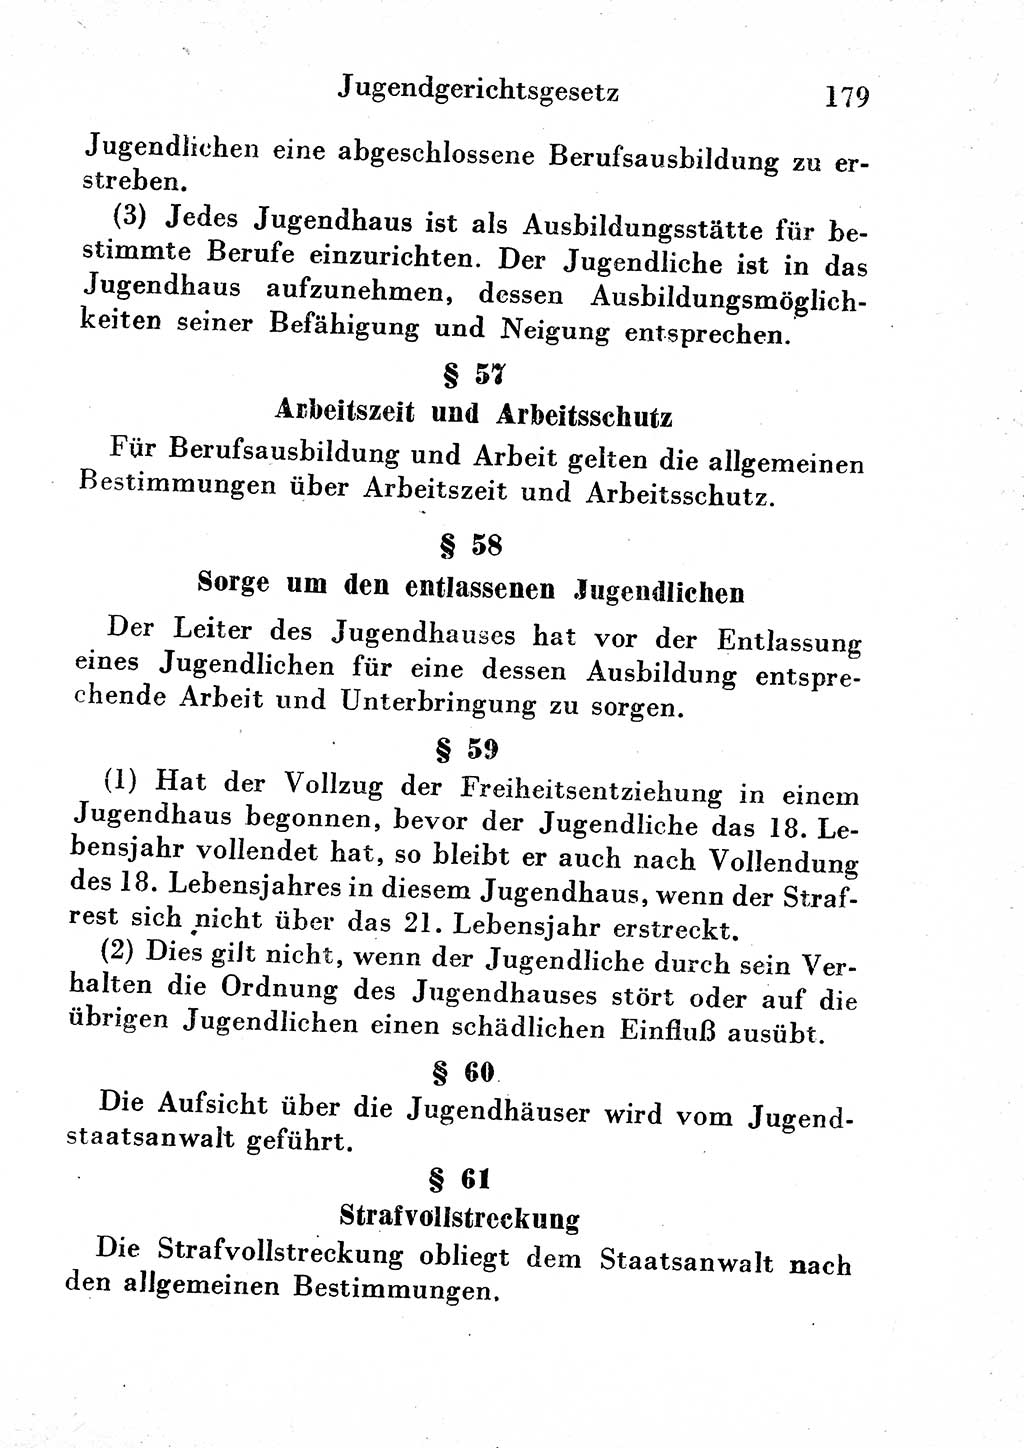 Strafgesetzbuch (StGB) und andere Strafgesetze [Deutsche Demokratische Republik (DDR)] 1954, Seite 179 (StGB Strafges. DDR 1954, S. 179)